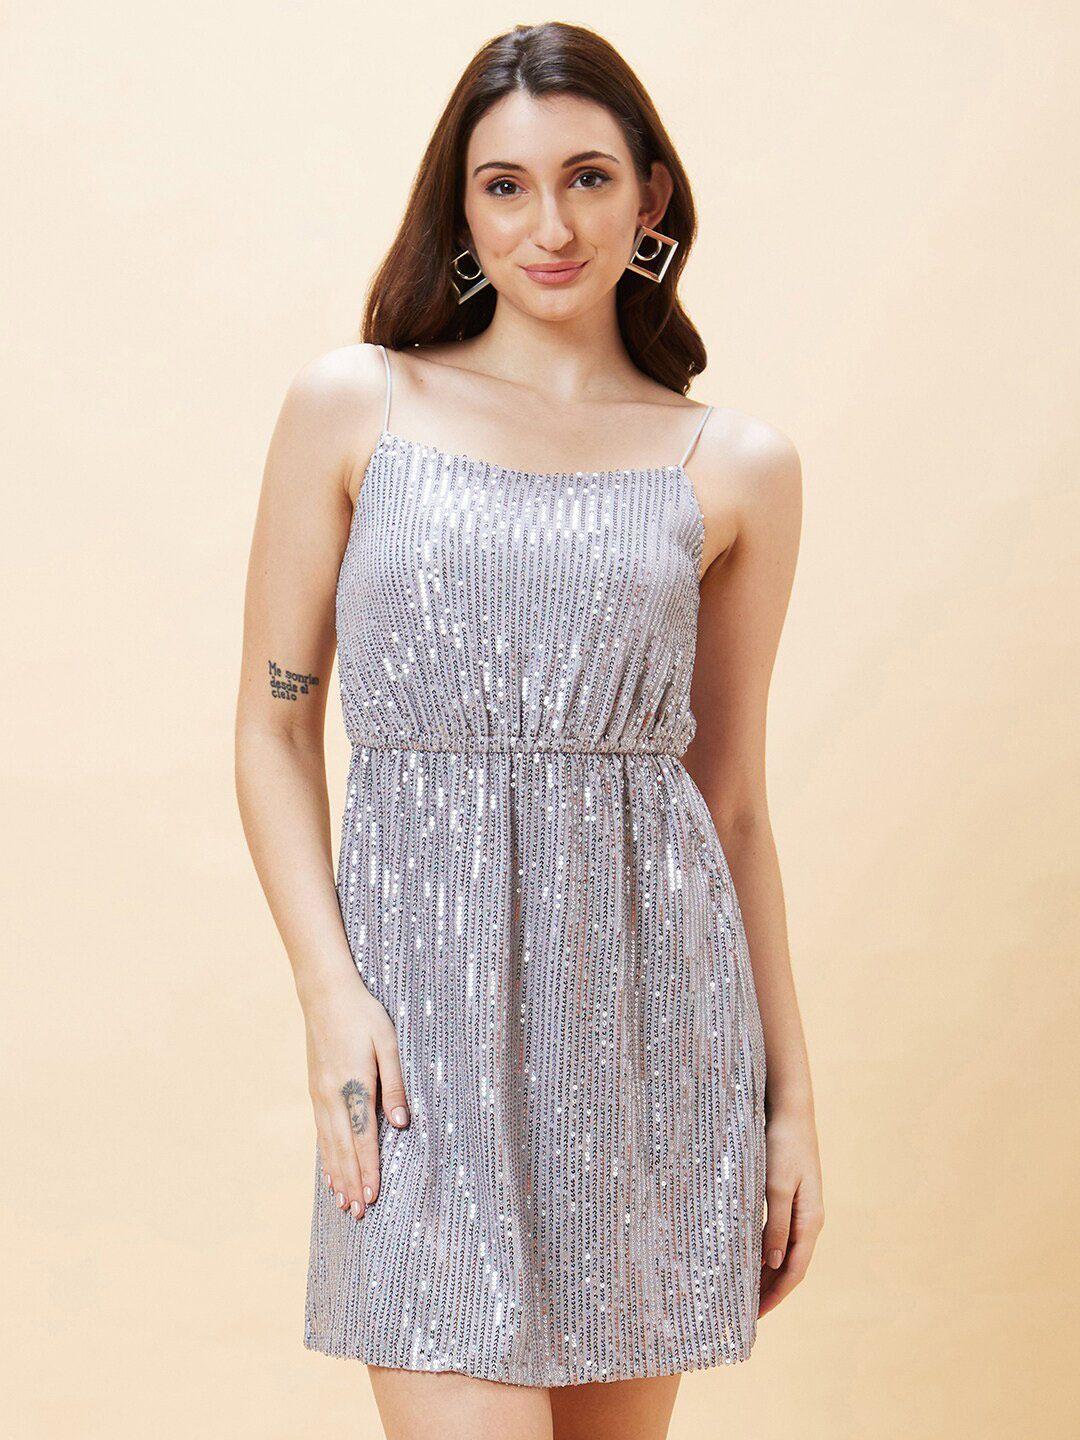 globus silver-toned embellished shoulder straps sequined a-line dress